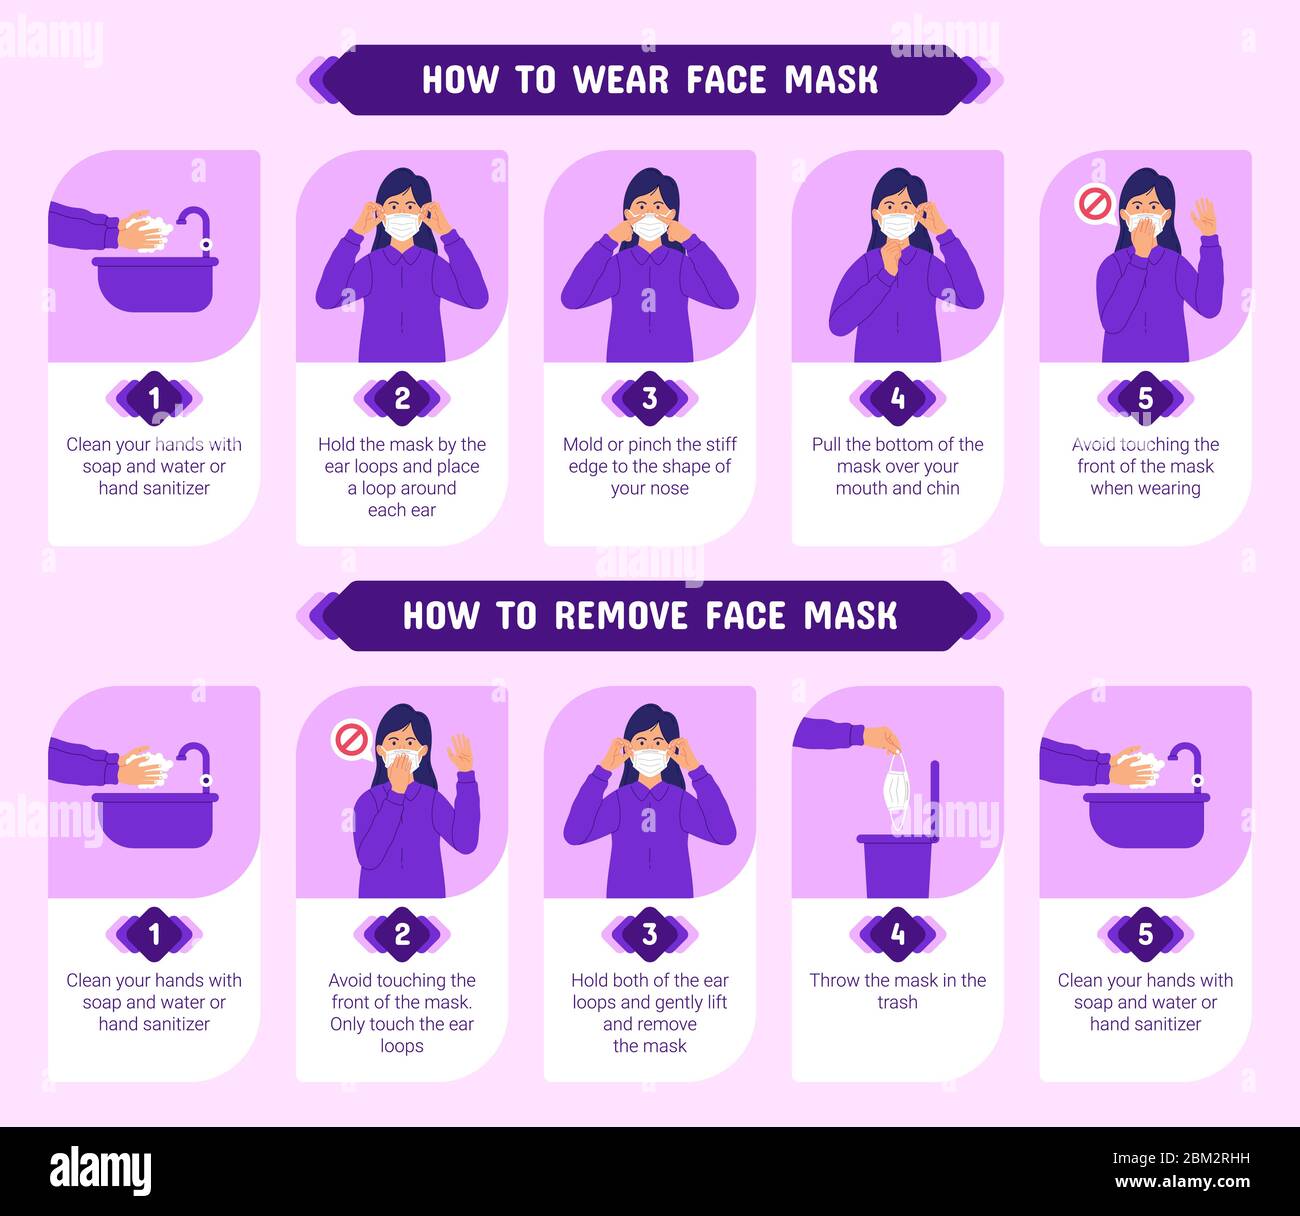 Come indossare e rimuovere correttamente la maschera facciale. Illustrazione infografica passo passo su come indossare e rimuovere una maschera medica. Illustrazione Vettoriale